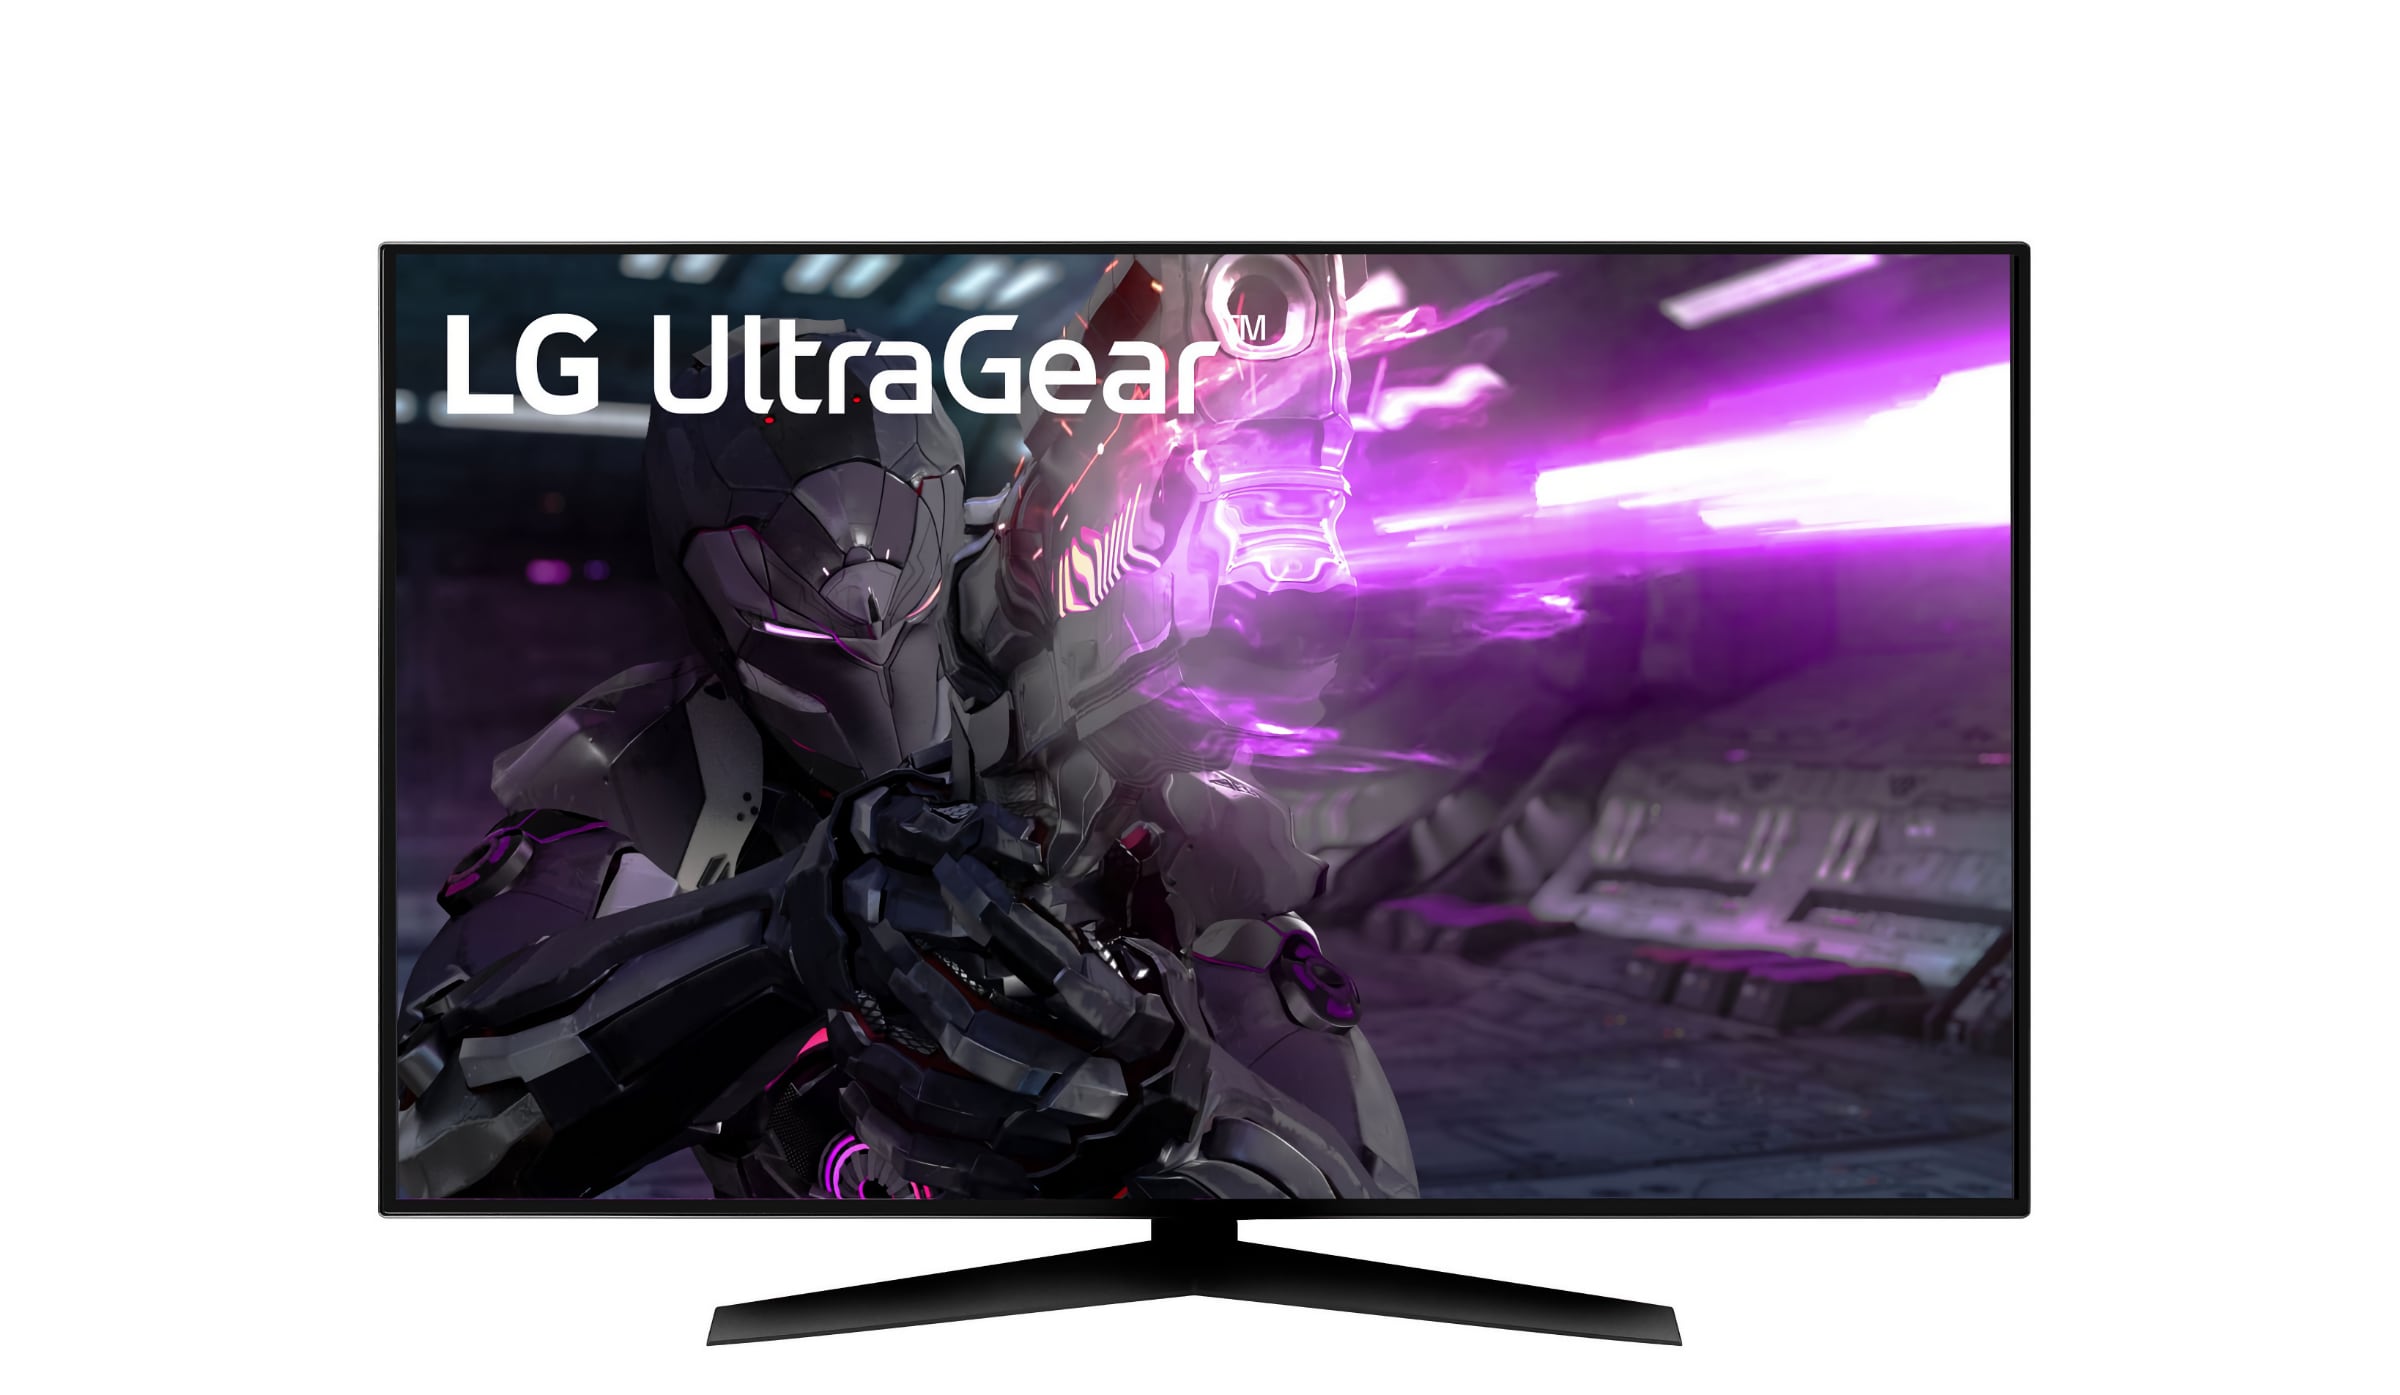 LG præsenterer 48-tommer 4K OLED gaming skærm